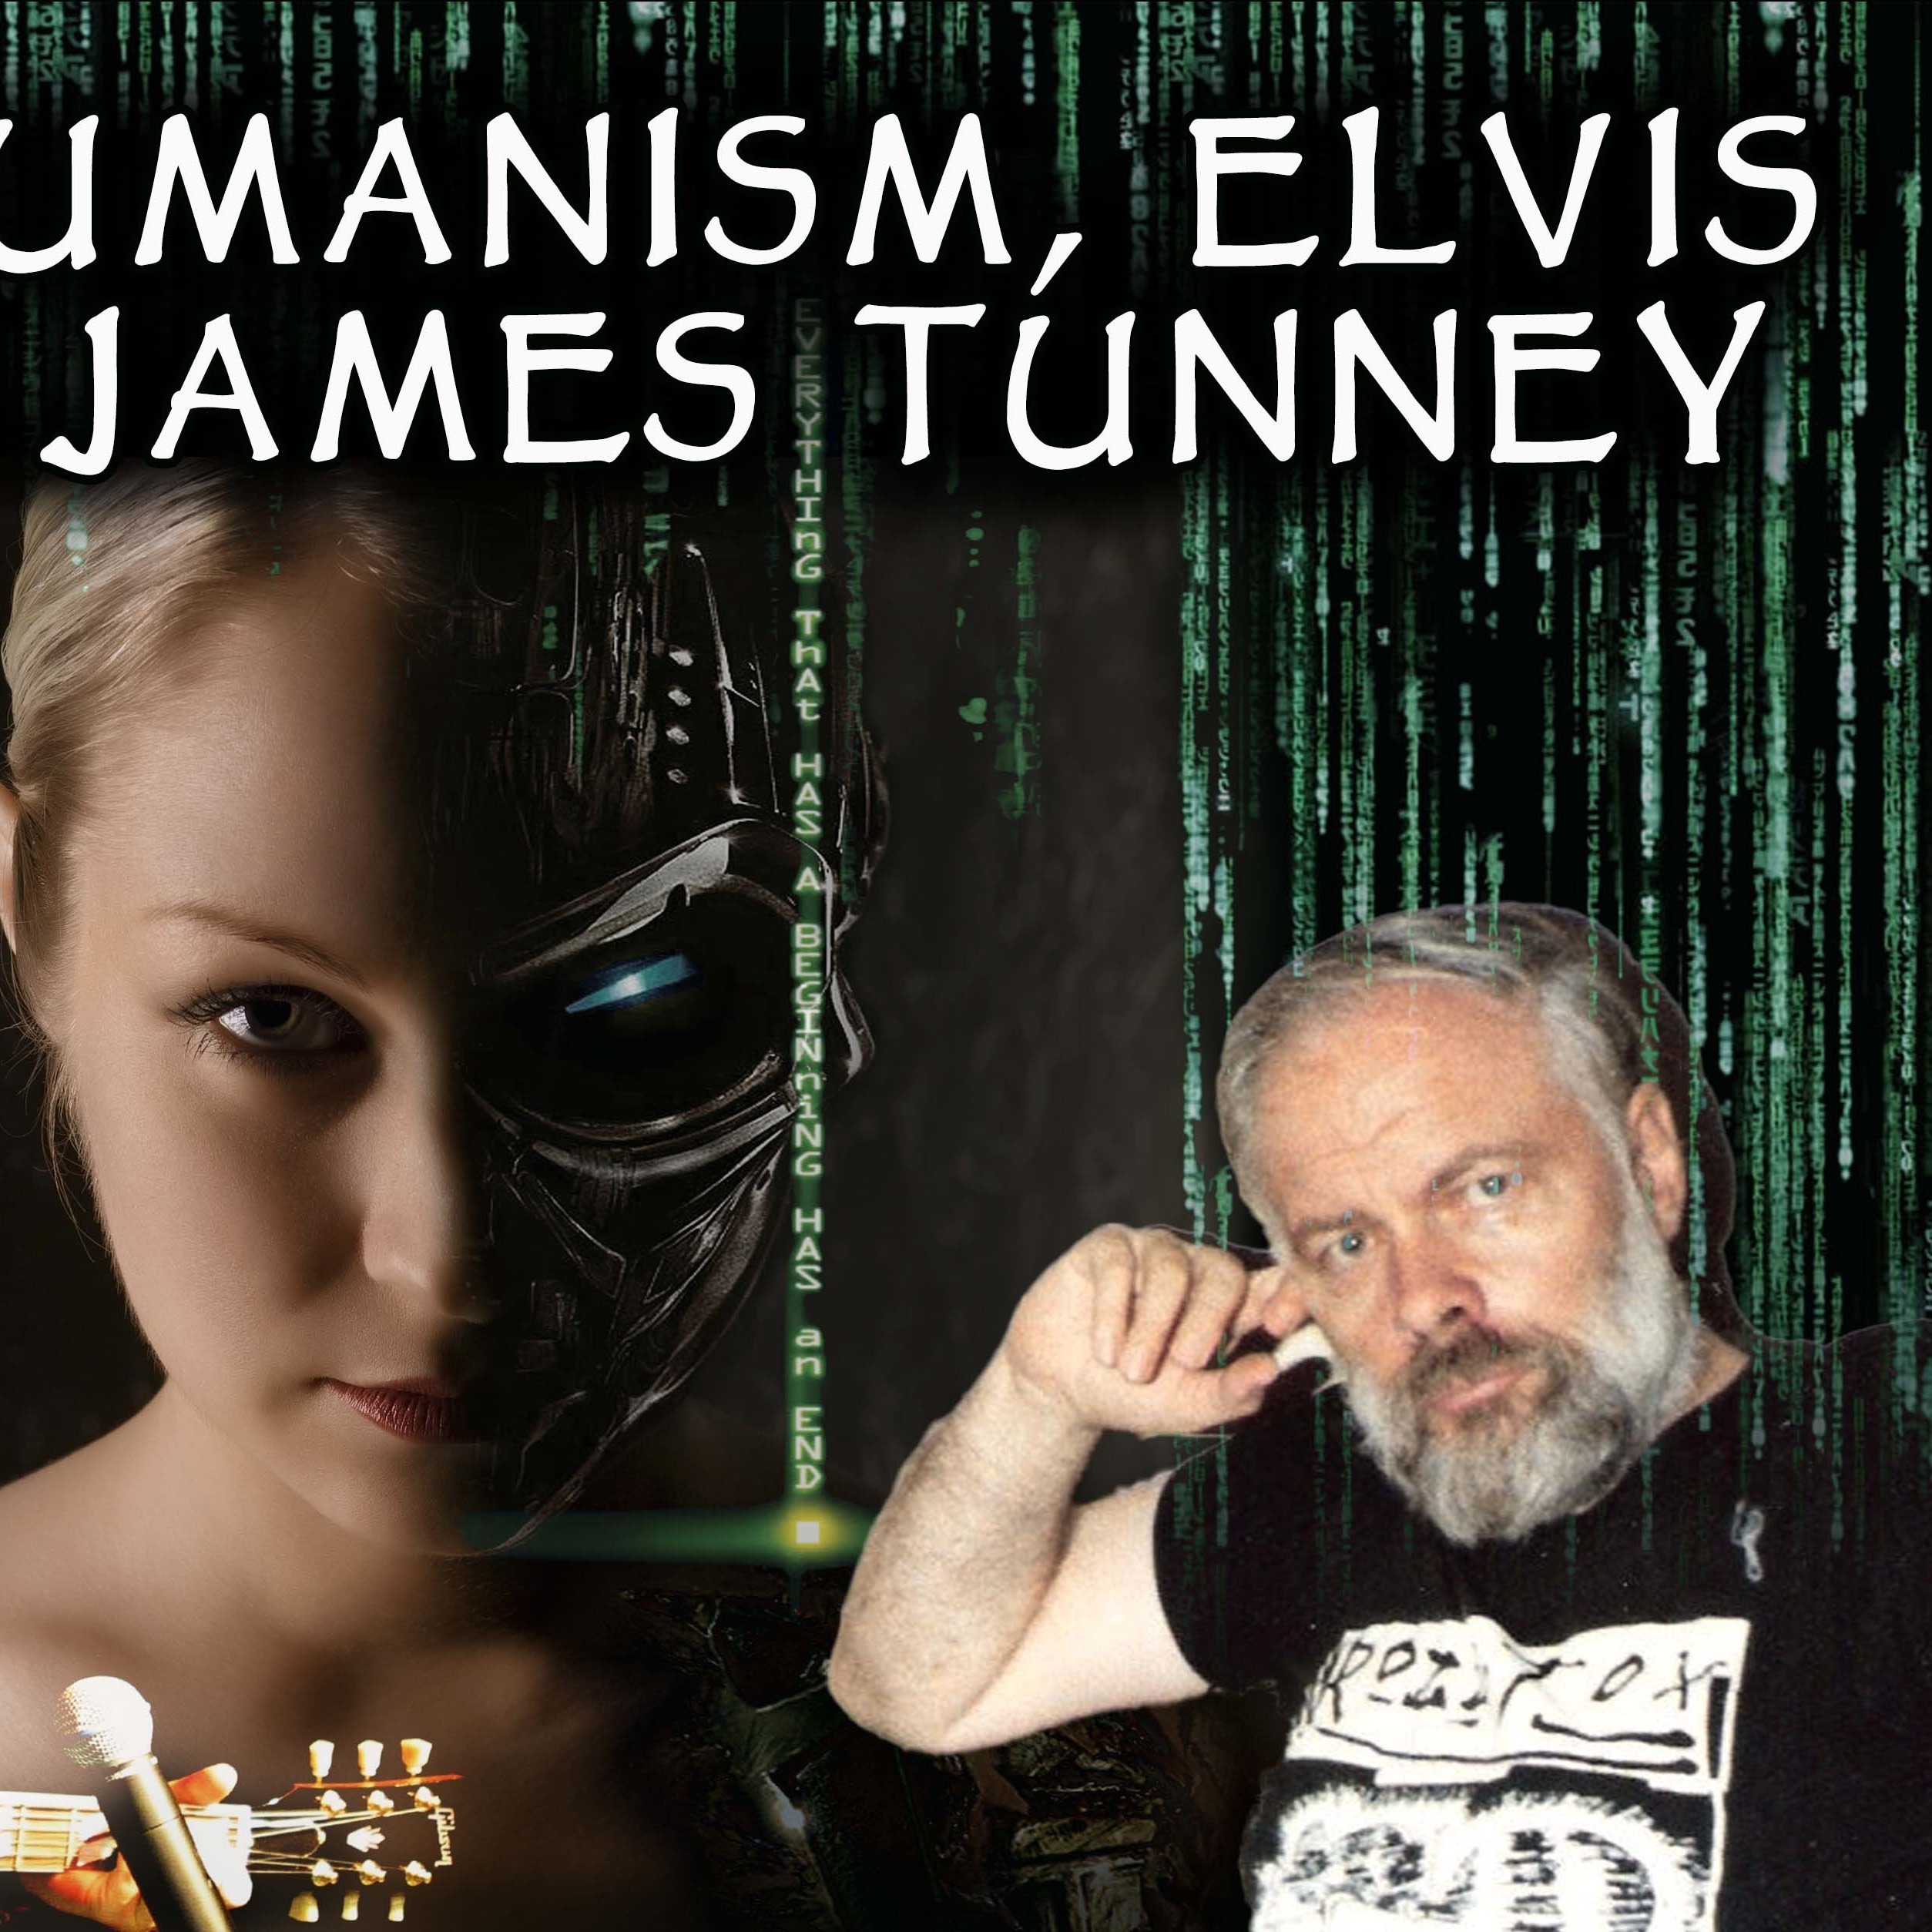 James Tunney on AI-Posthumanism, Elvis, and PKD